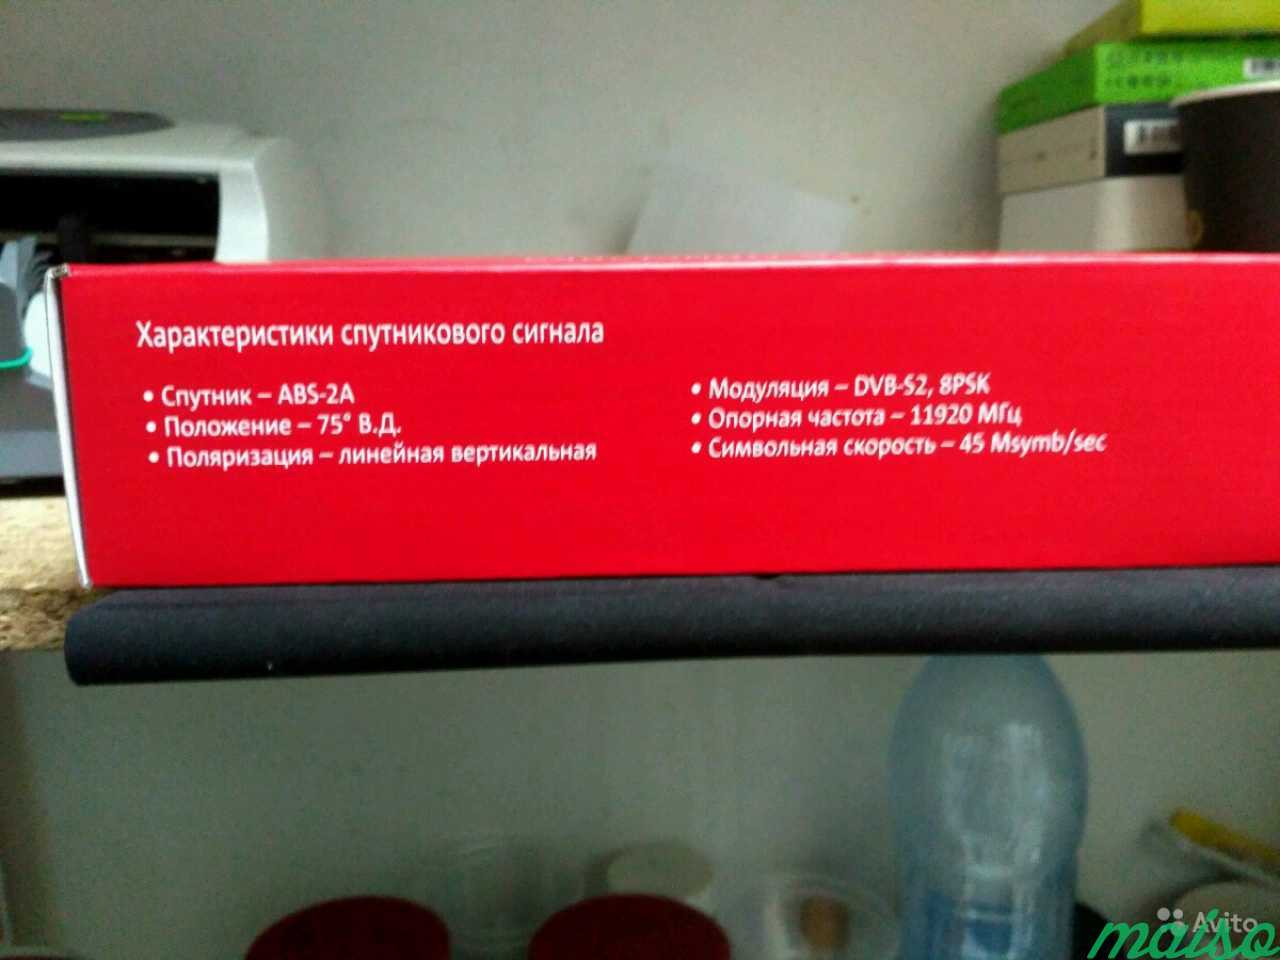 Спутниковое телевидение МТС(можно договориться) в Санкт-Петербурге. Фото 1